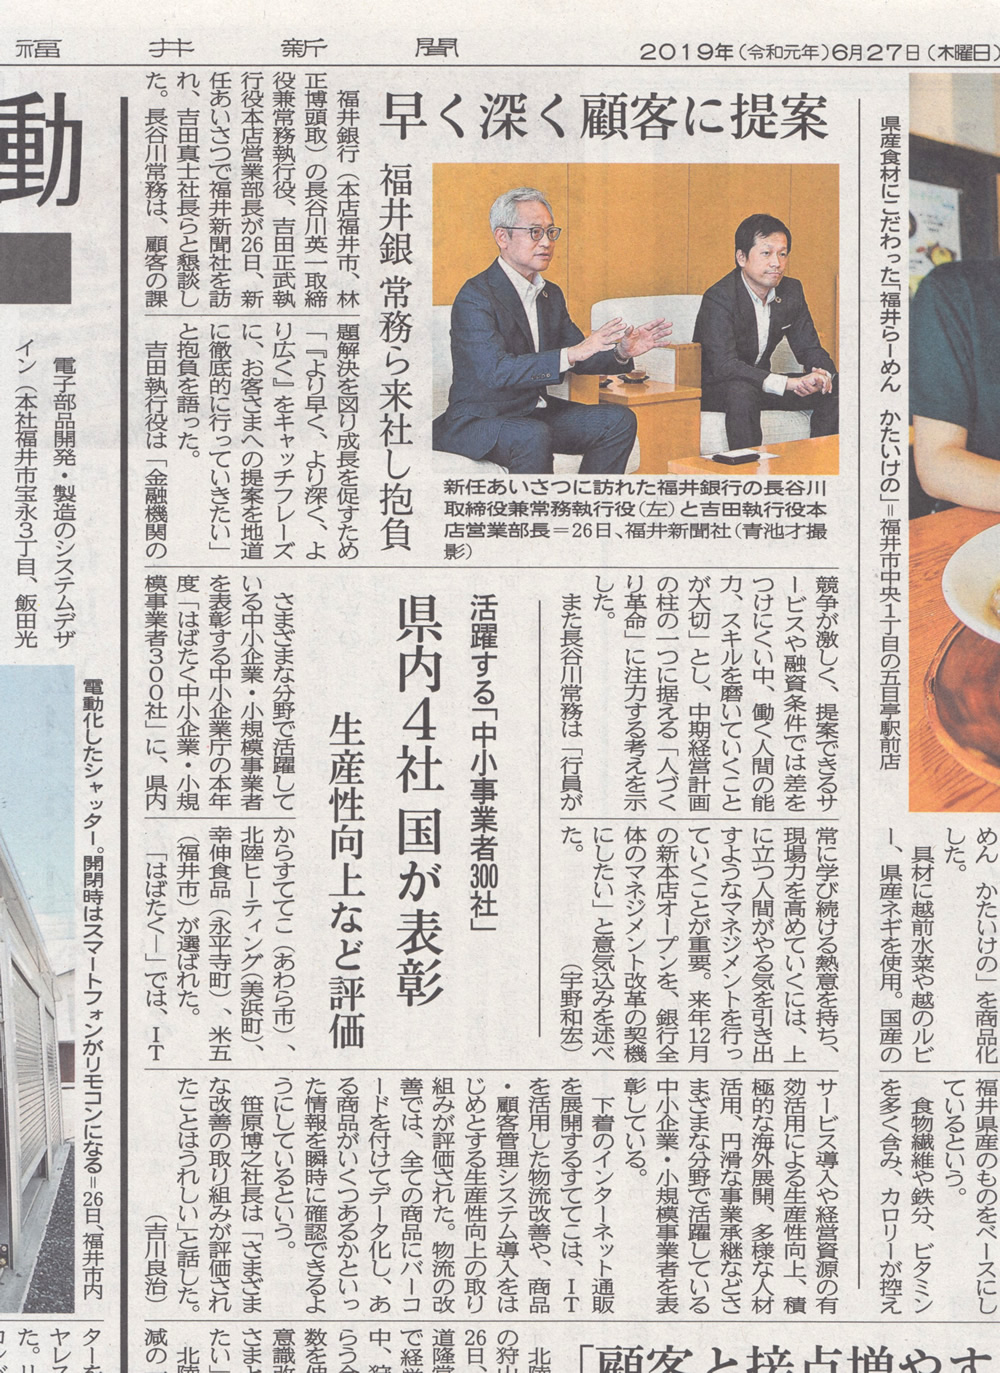 福井新聞に「はばたく中小企業300社」として表彰されたことを掲載していただきました - 下着専門商社 すててこ株式会社